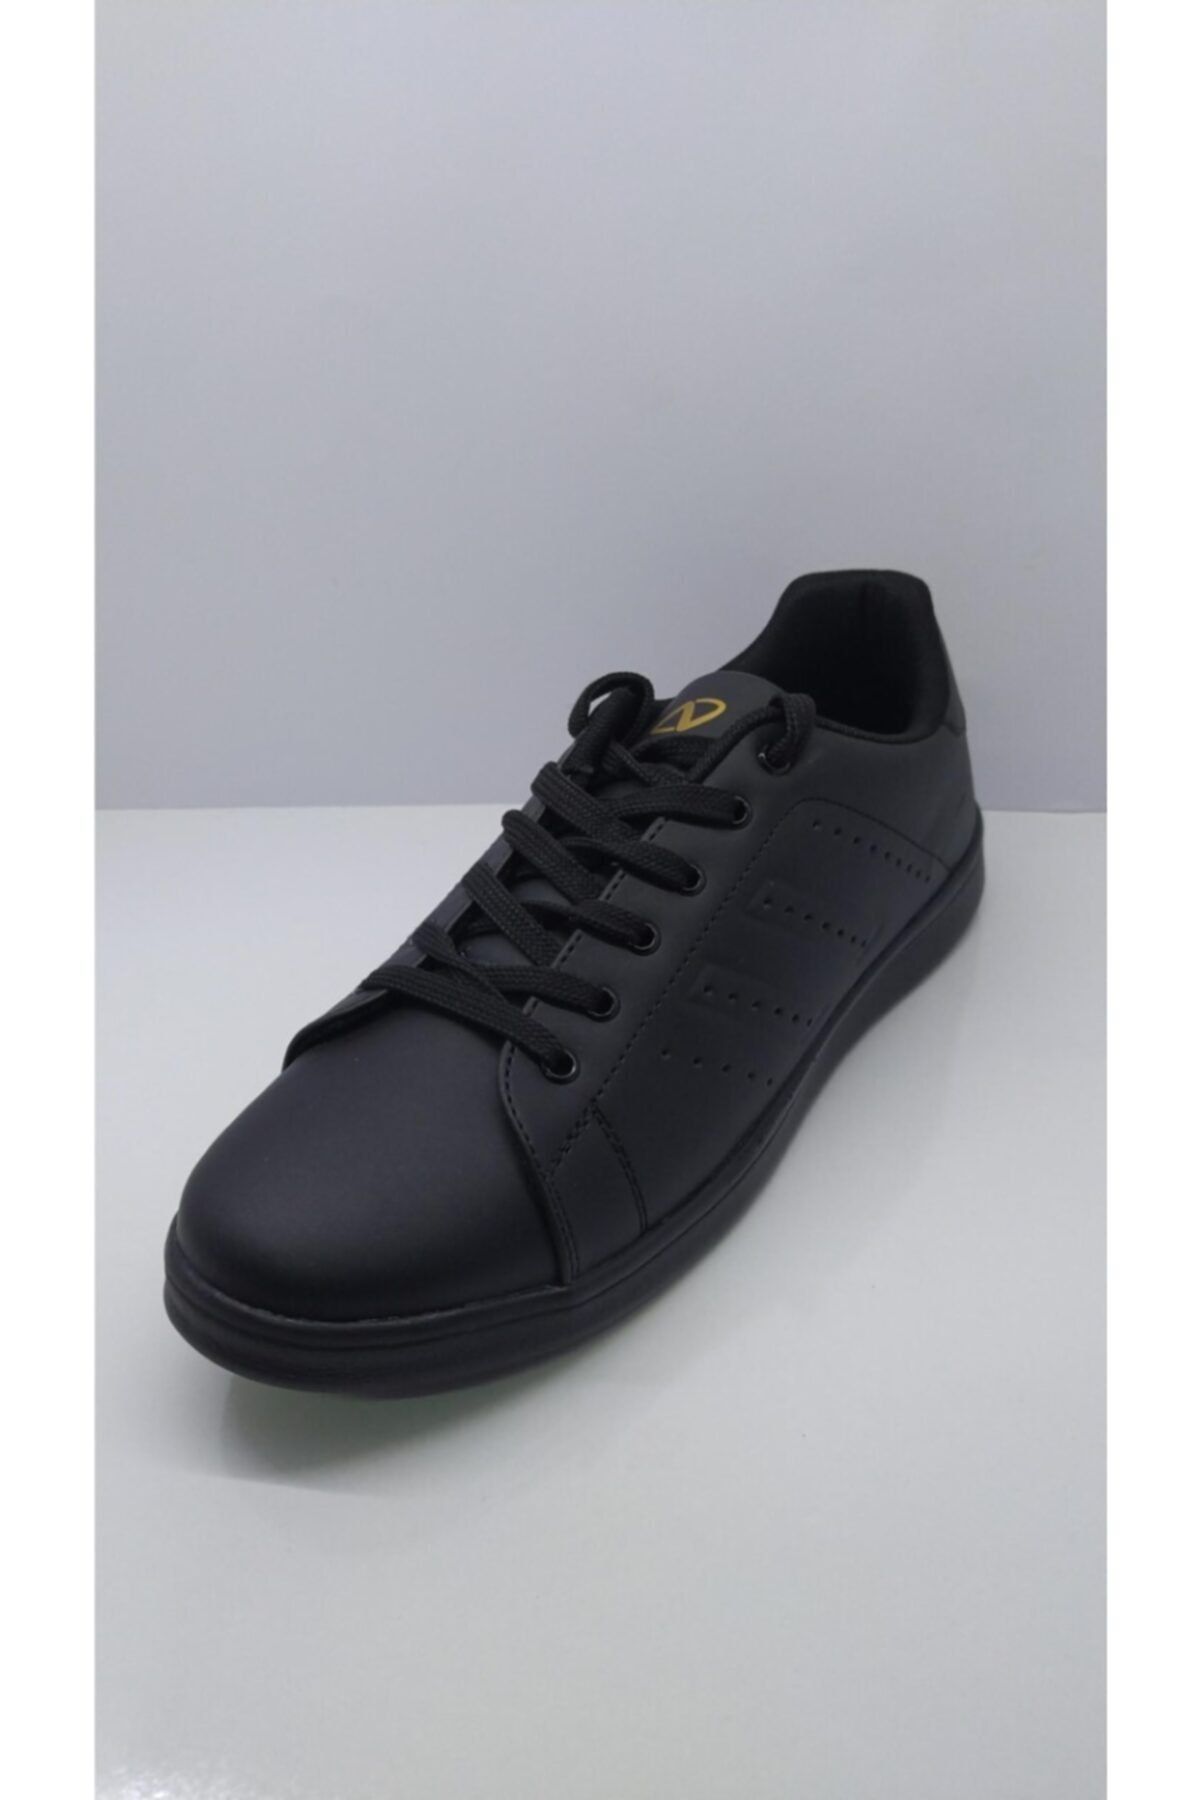 Nstep Unısex Siyah Sneaker Spor Ayakkabı